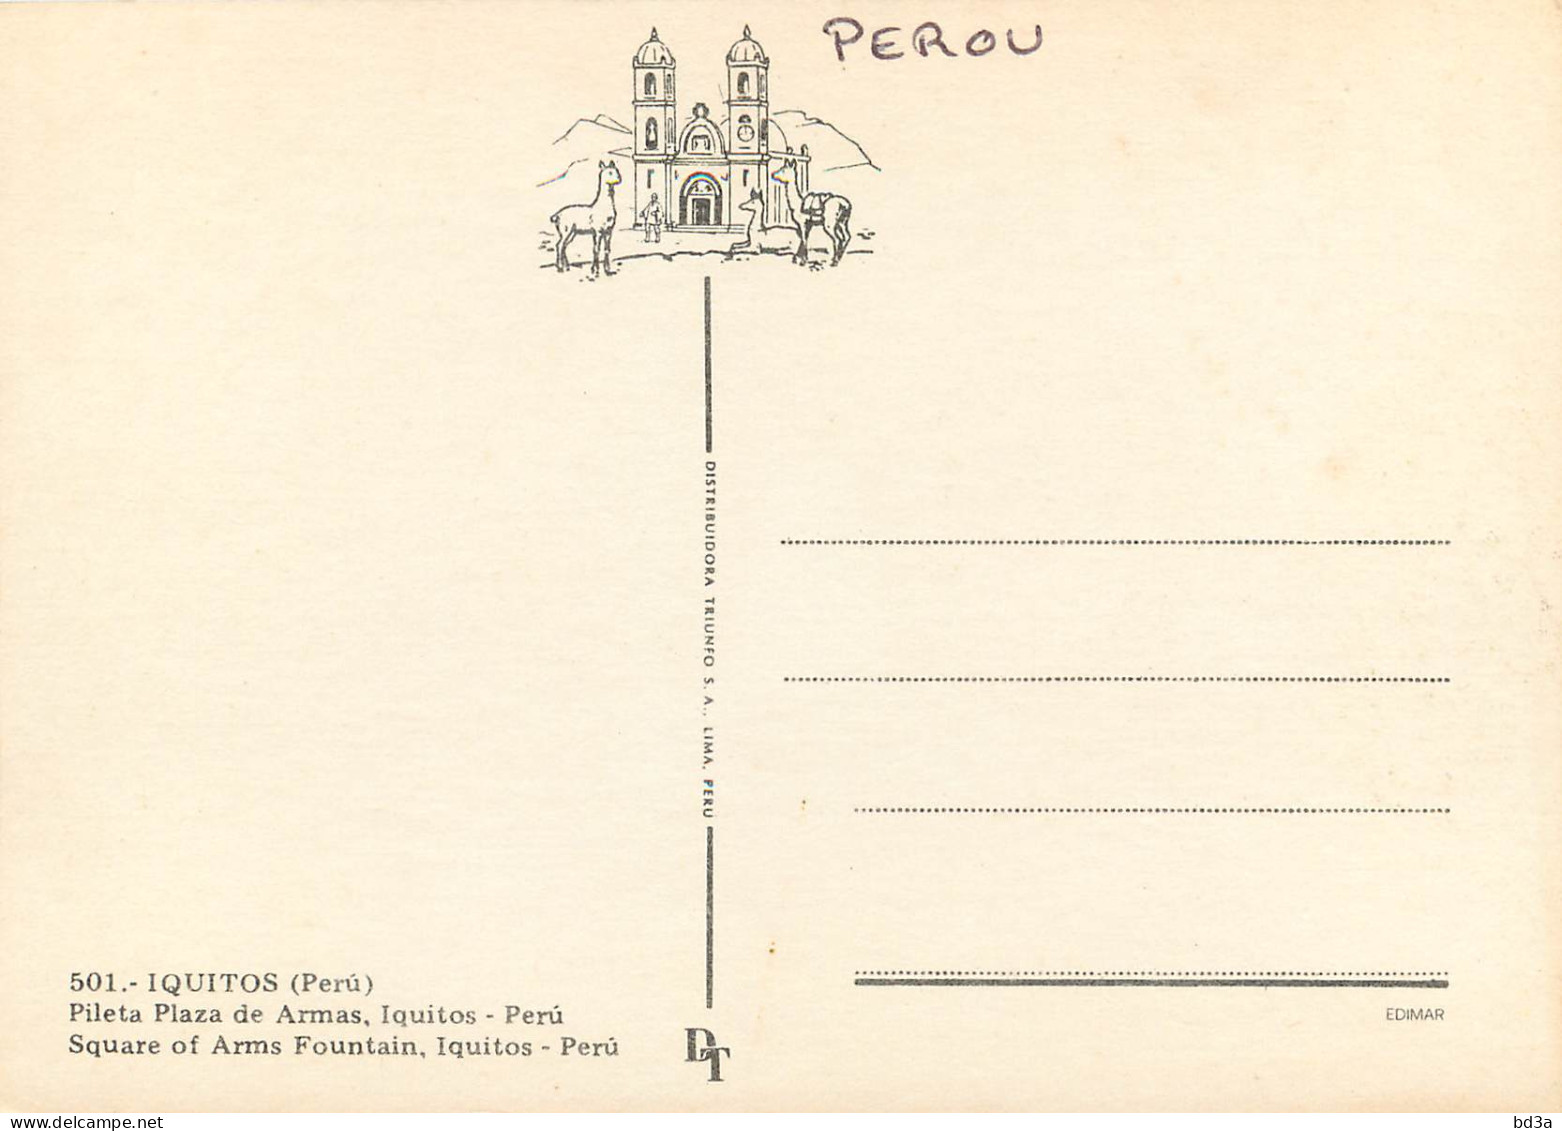 PEROU PERU IQUITOS - Perú